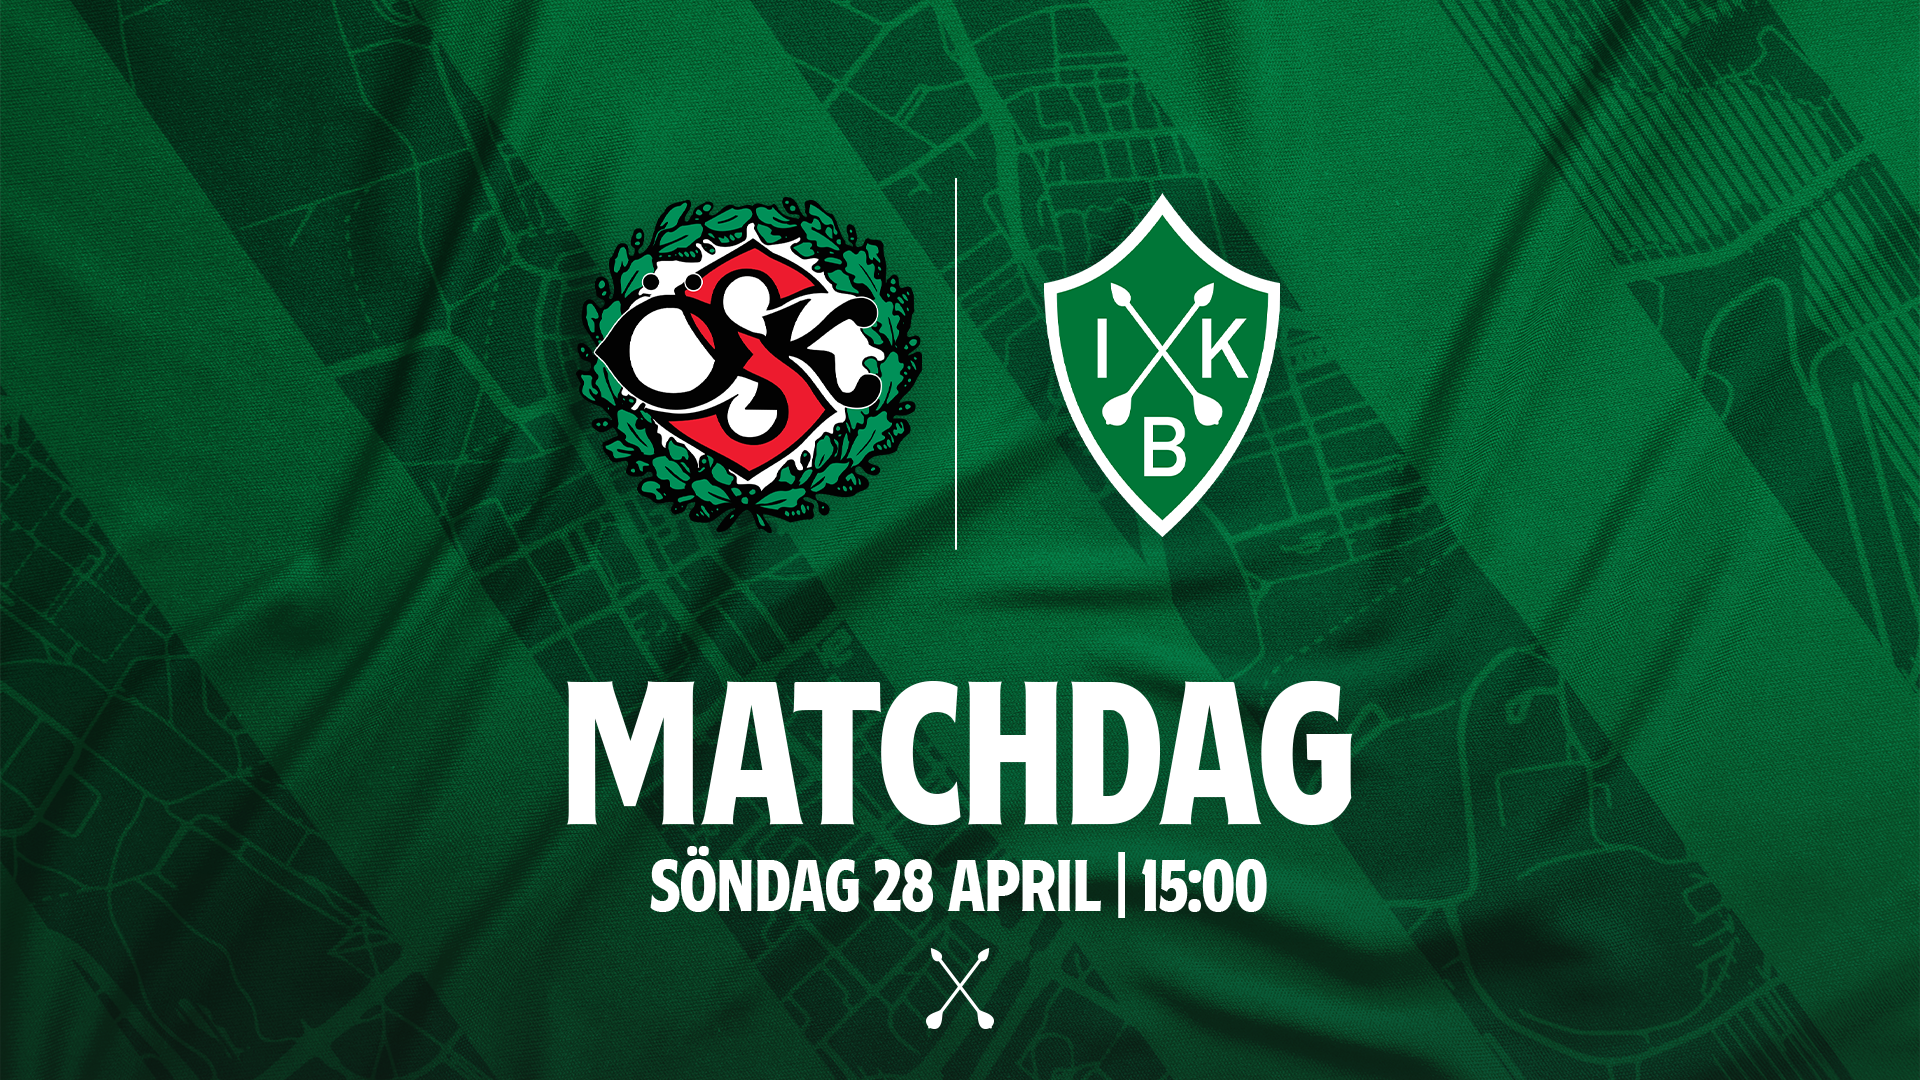 MATCHDAG: Örebro SK - IK Brage